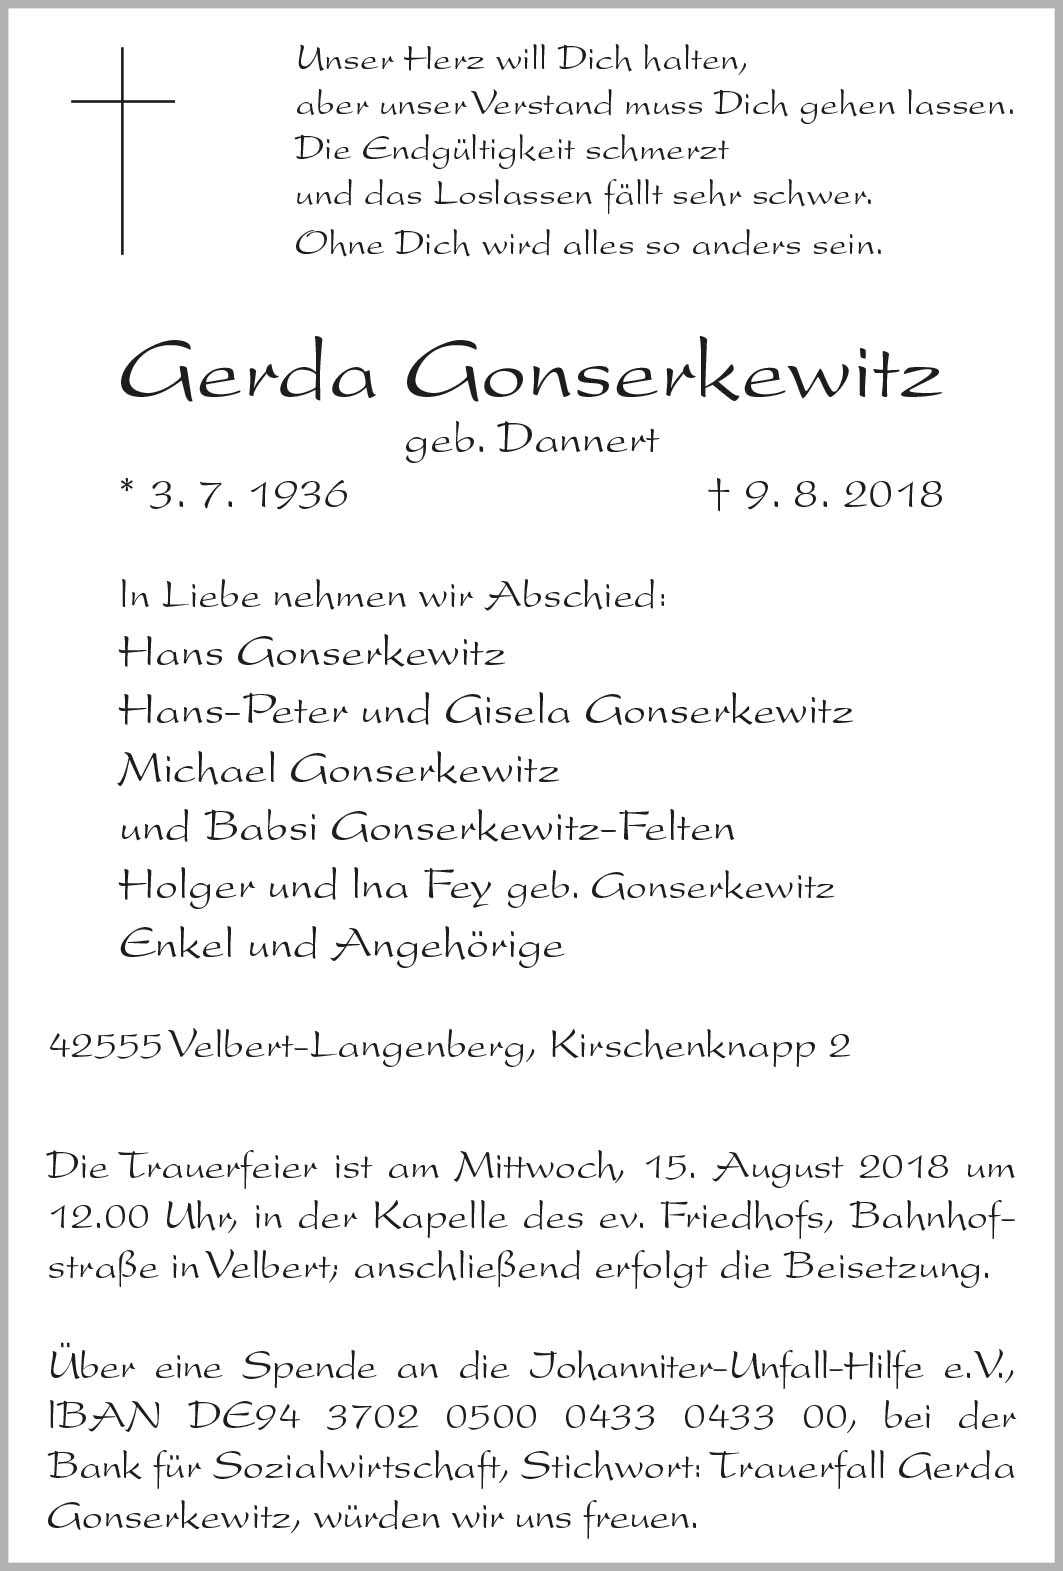 Gerda Gonserkewitz